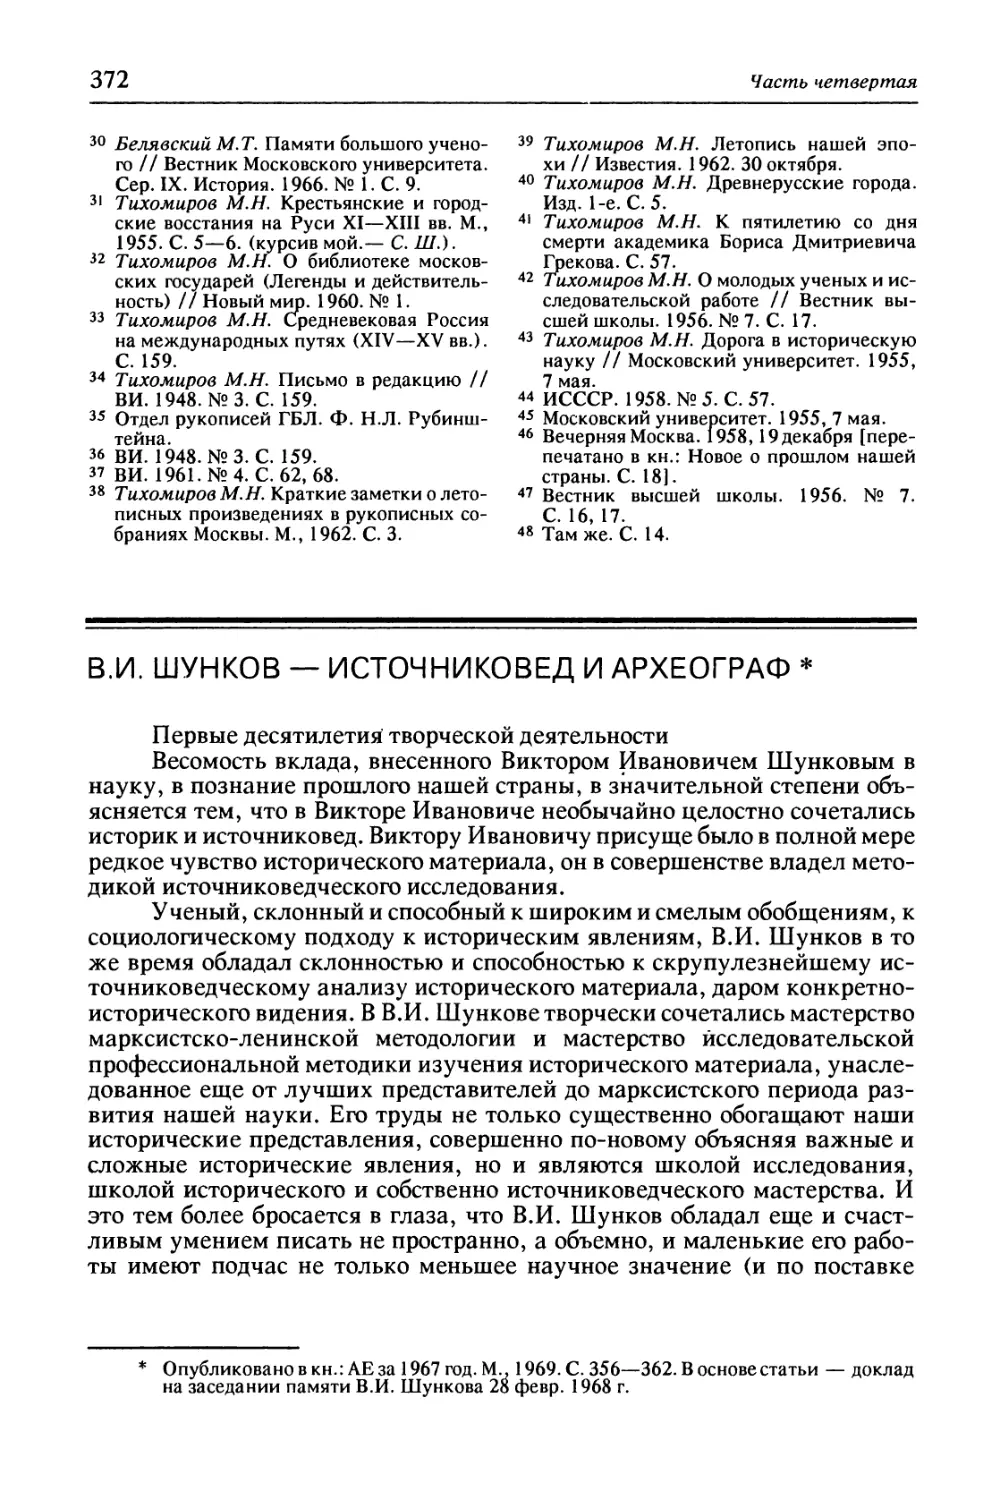 В.И. Шунков — источниковед и археограф